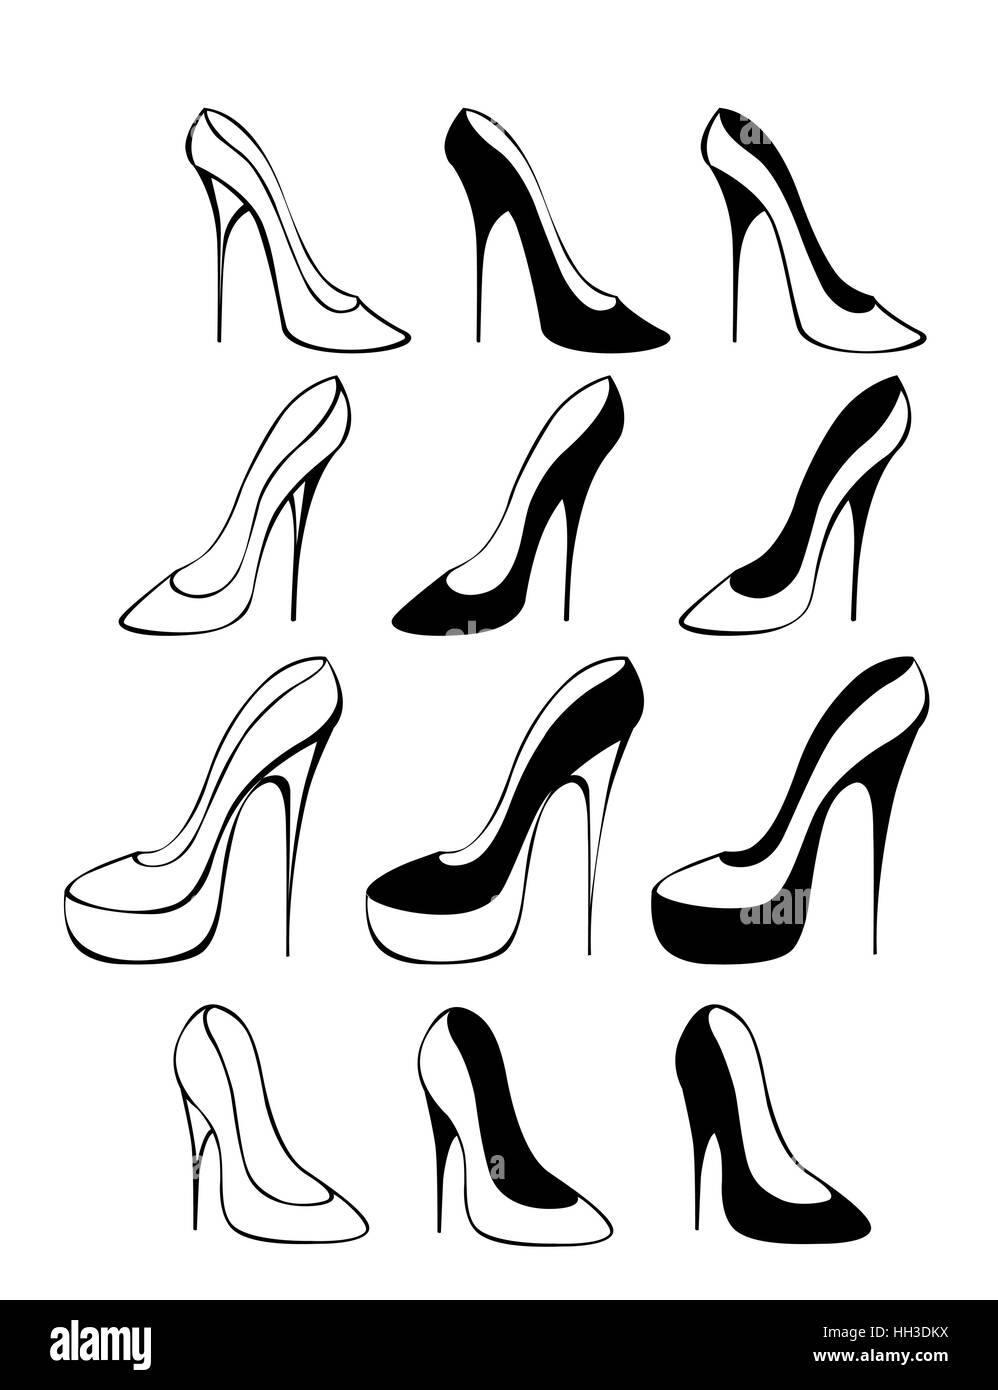 Jeu de silhouettes de chaussures sur un fond blanc Illustration de Vecteur